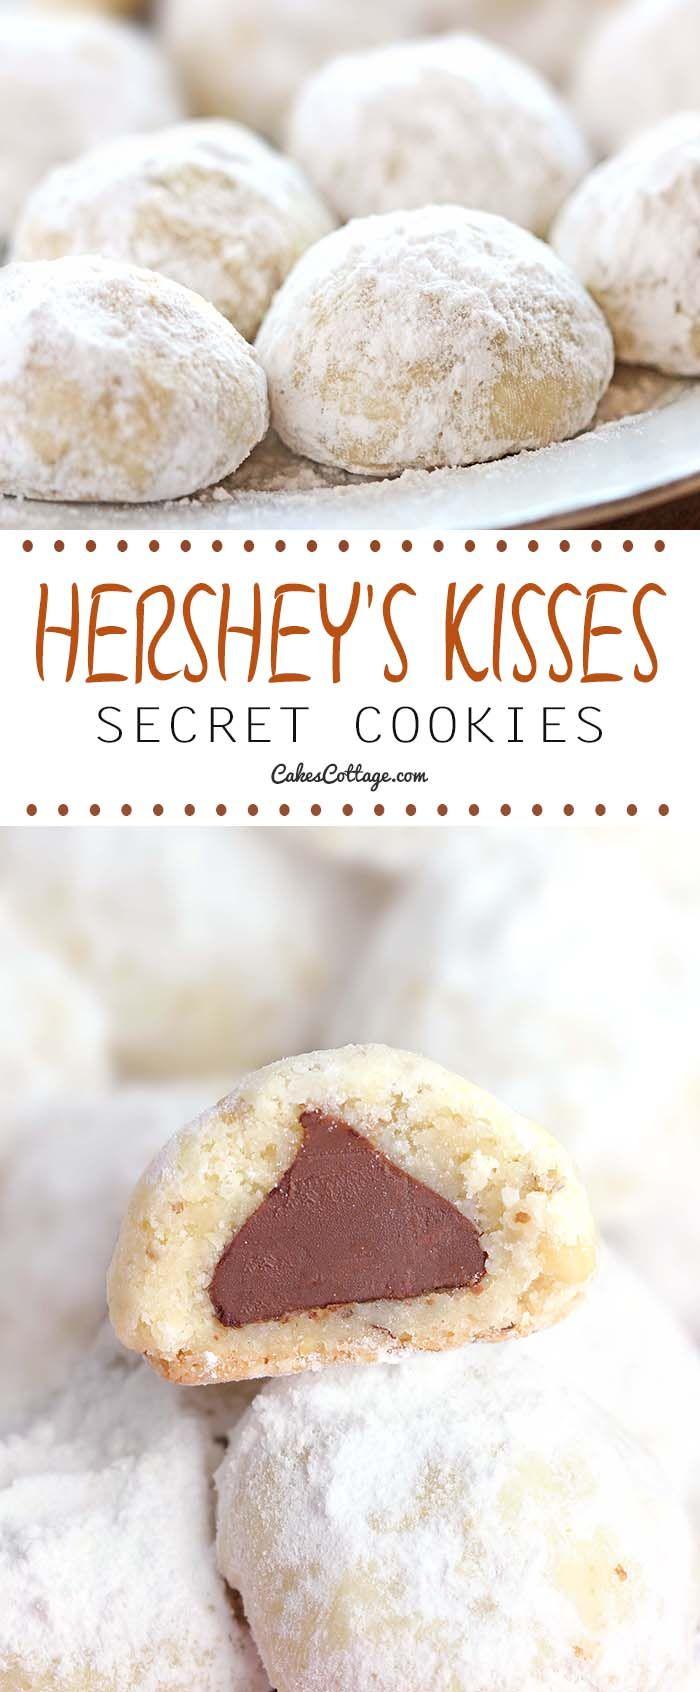 Wedding - Hershey's Secret Kisses Cookies